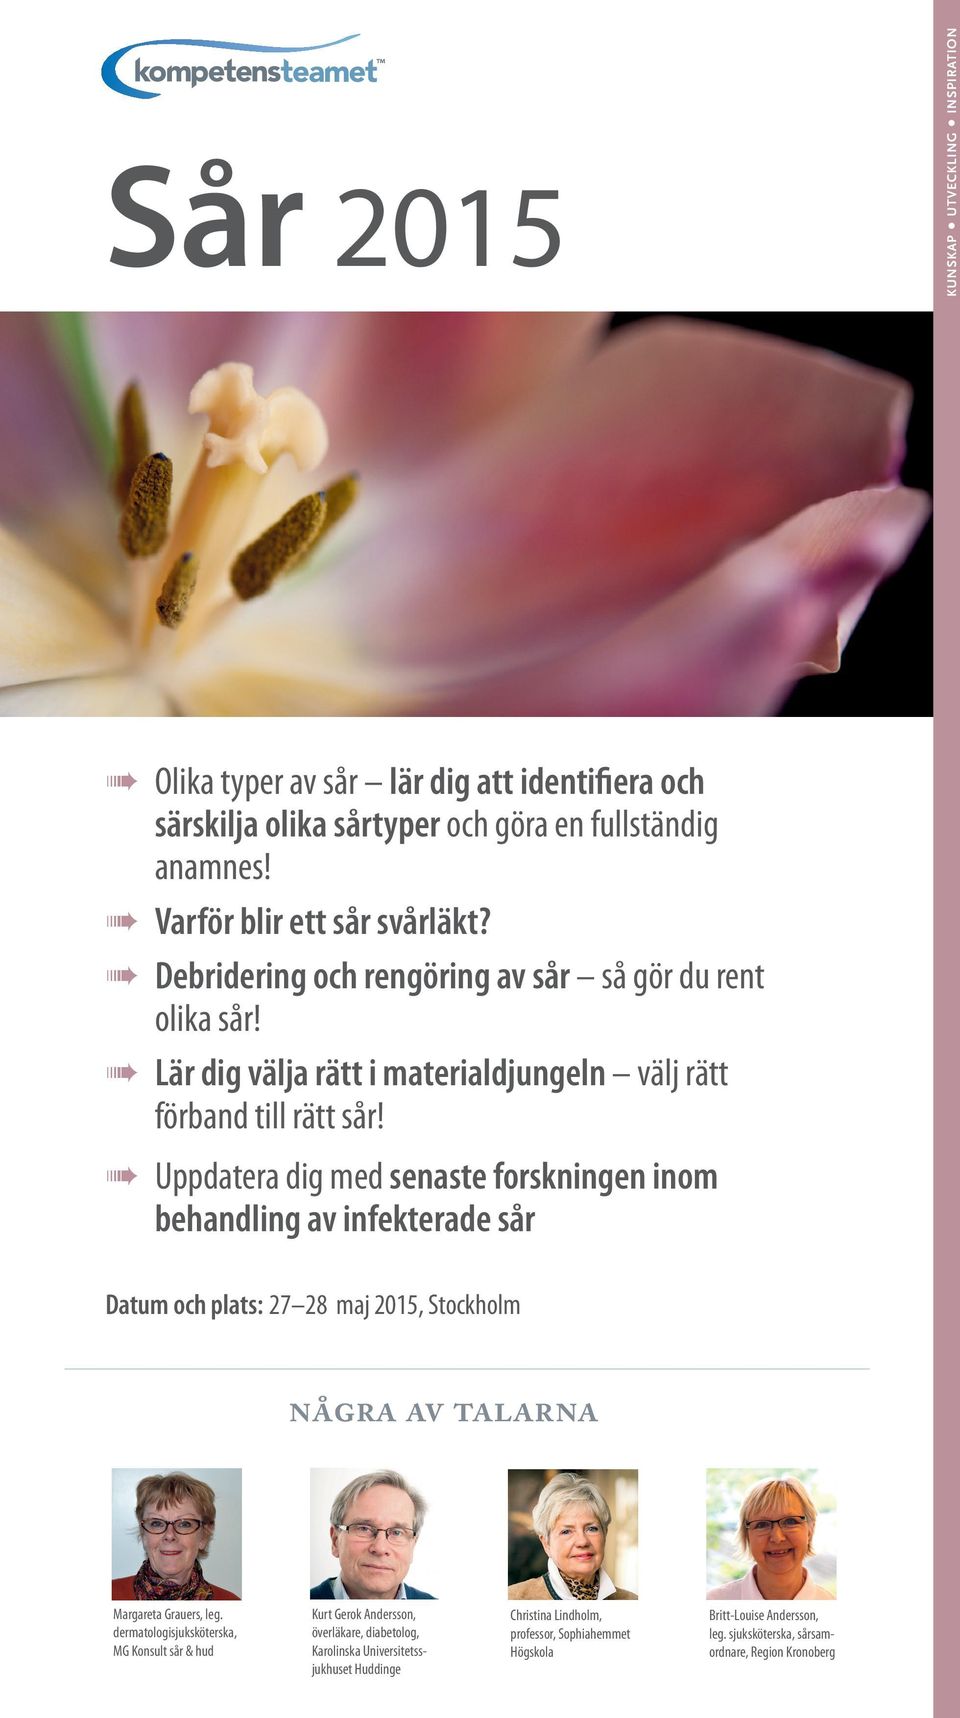 Uppdatera dig med senaste forskningen inom behandling av infekterade sår Datum och plats: 27 28 maj 2015, Stockholm några av talarna Margareta Grauers, leg.